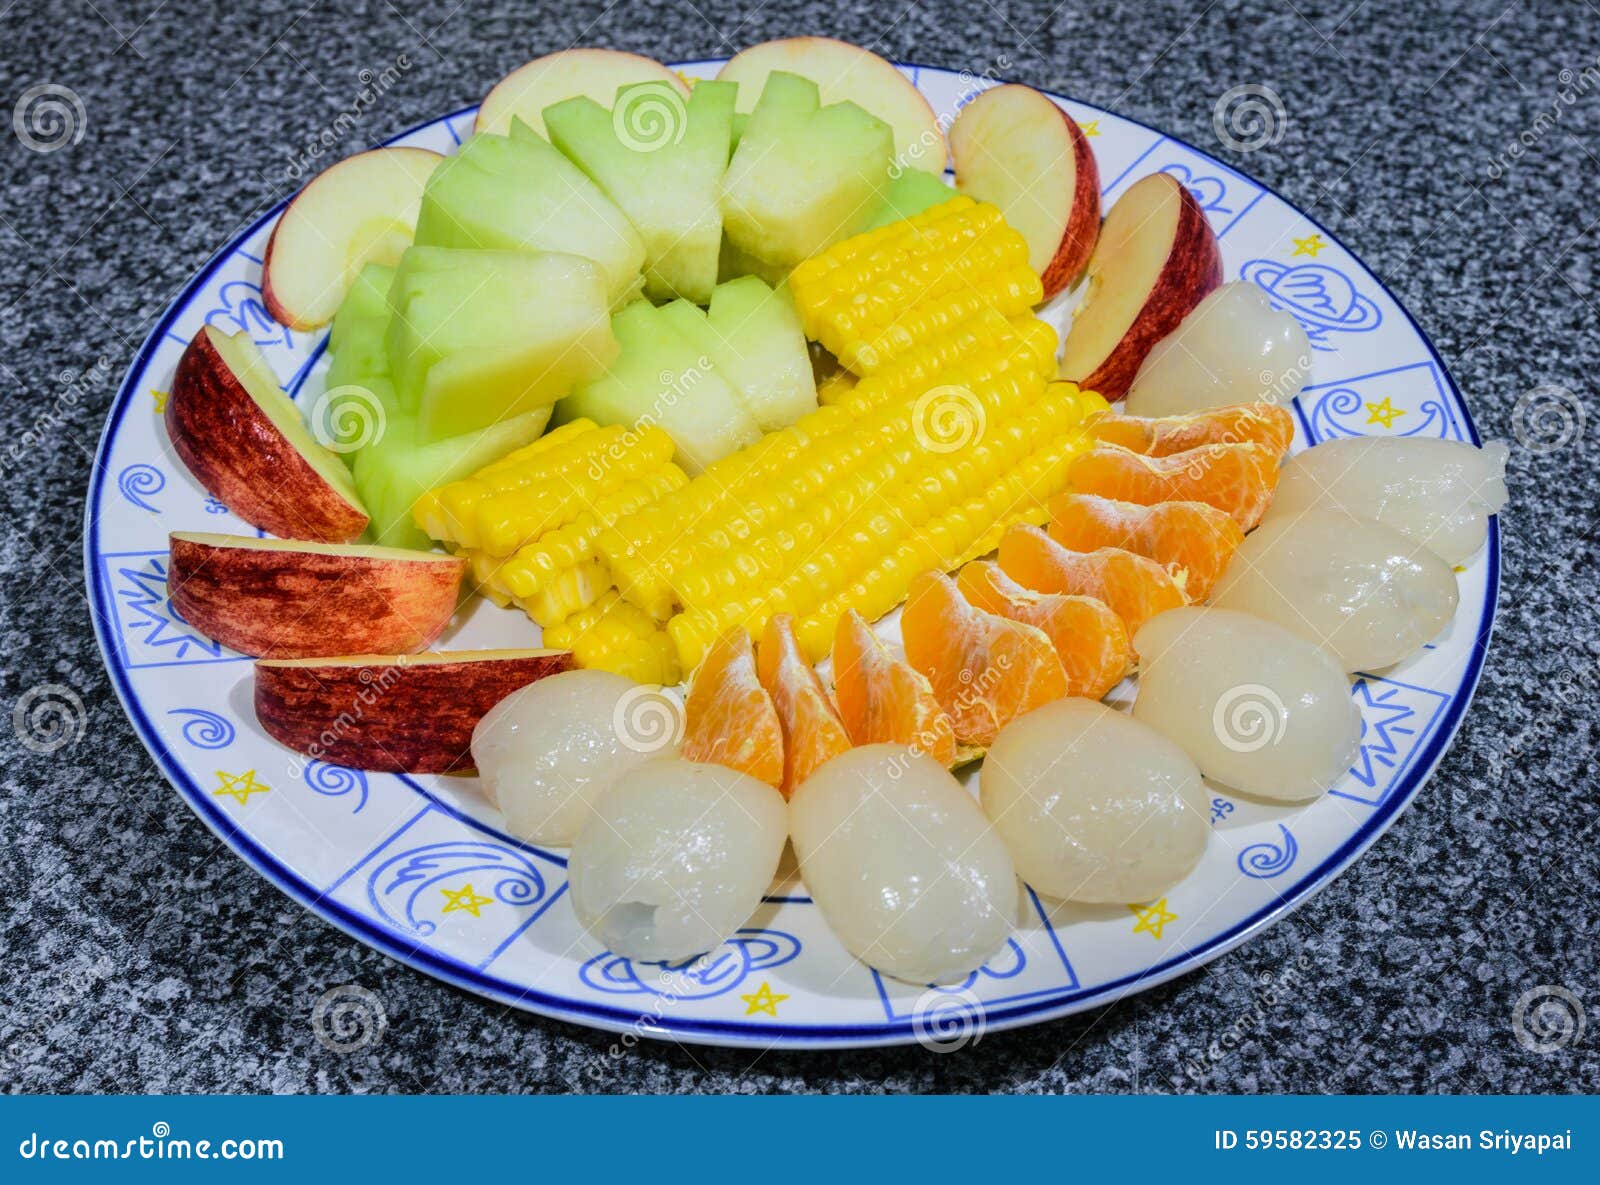 Un piatto della frutta
Rambutan, melone, arancia, mela, cereale